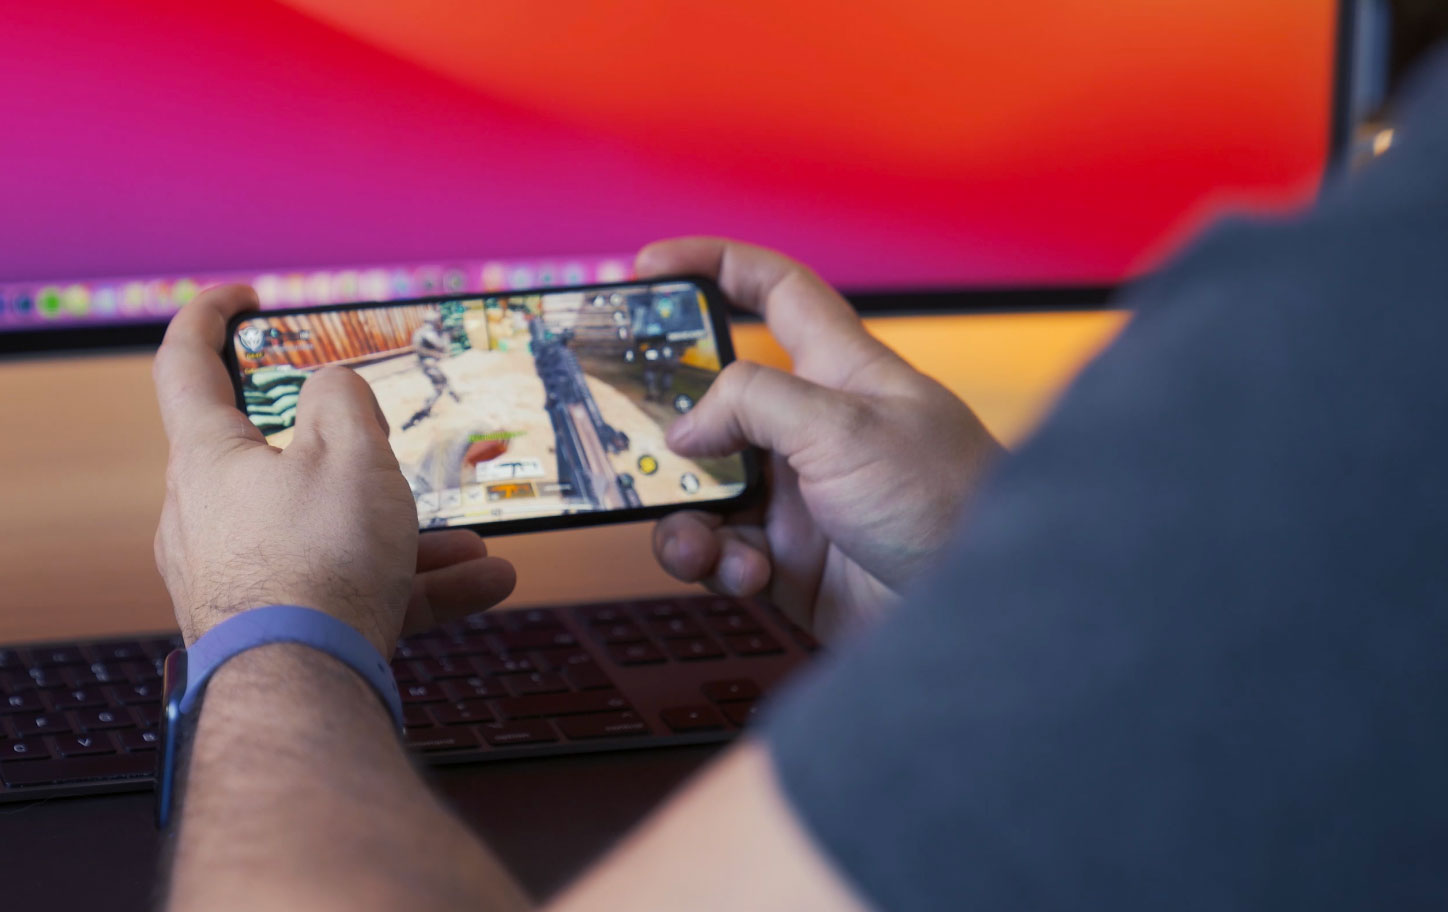  Redmi va annoncer un smartphone gaming à la fin du mois